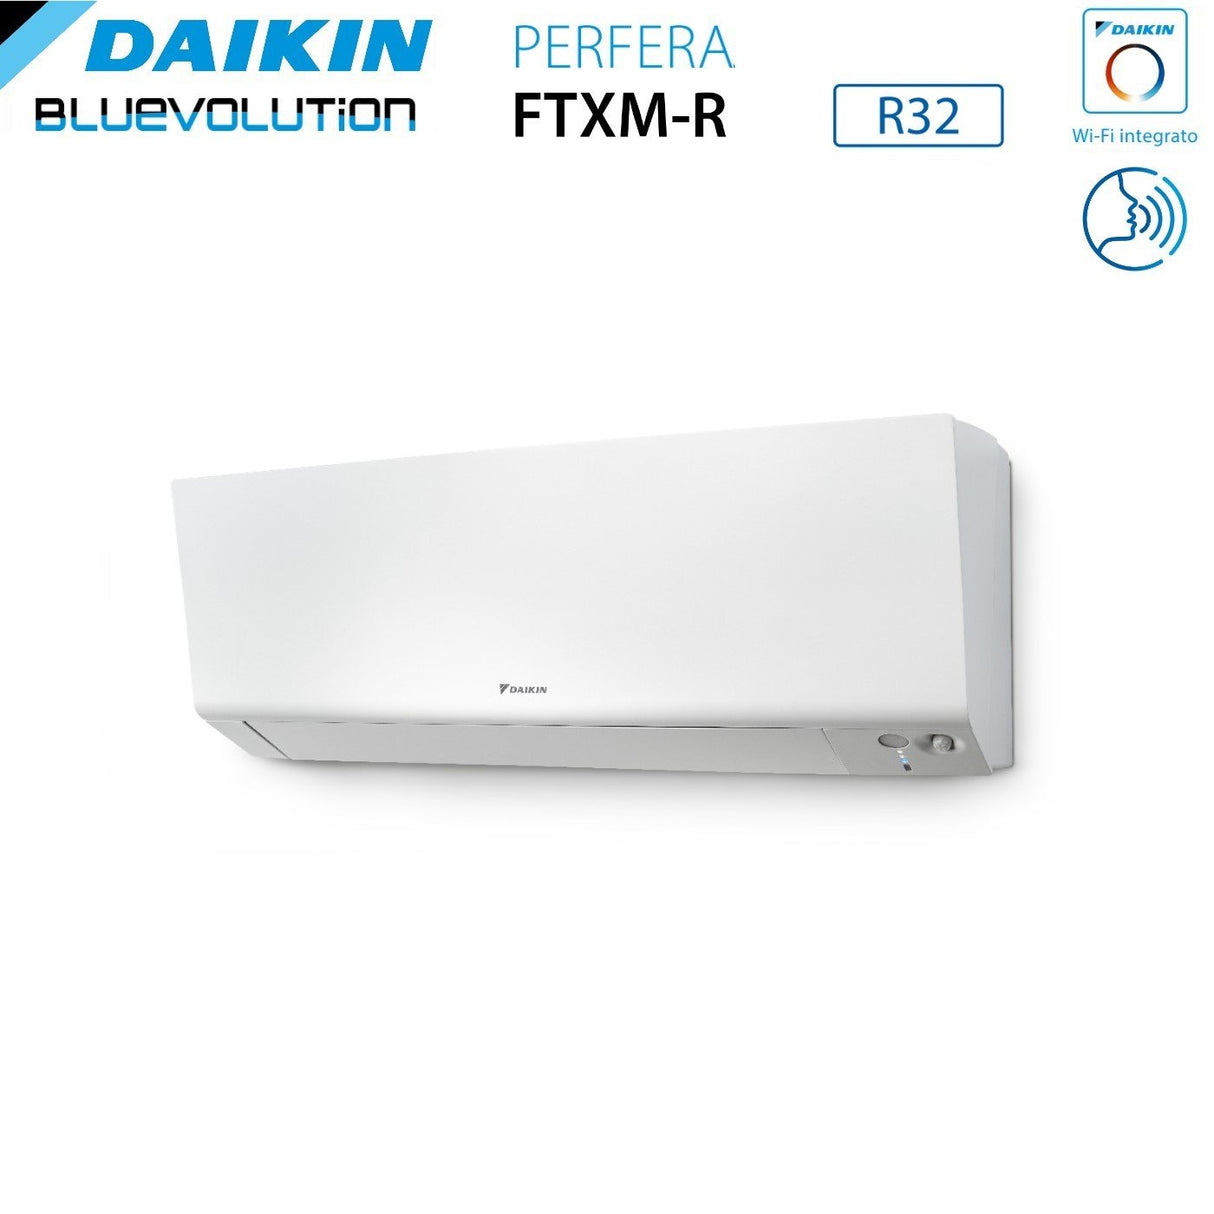 immagine-5-daikin-climatizzatore-condizionatore-daikin-bluevolution-quadri-split-inverter-serie-ftxmr-perfera-wall-791218-con-4mxm80a-r-32-wi-fi-integrato-700090001200018000-garanzia-italiana